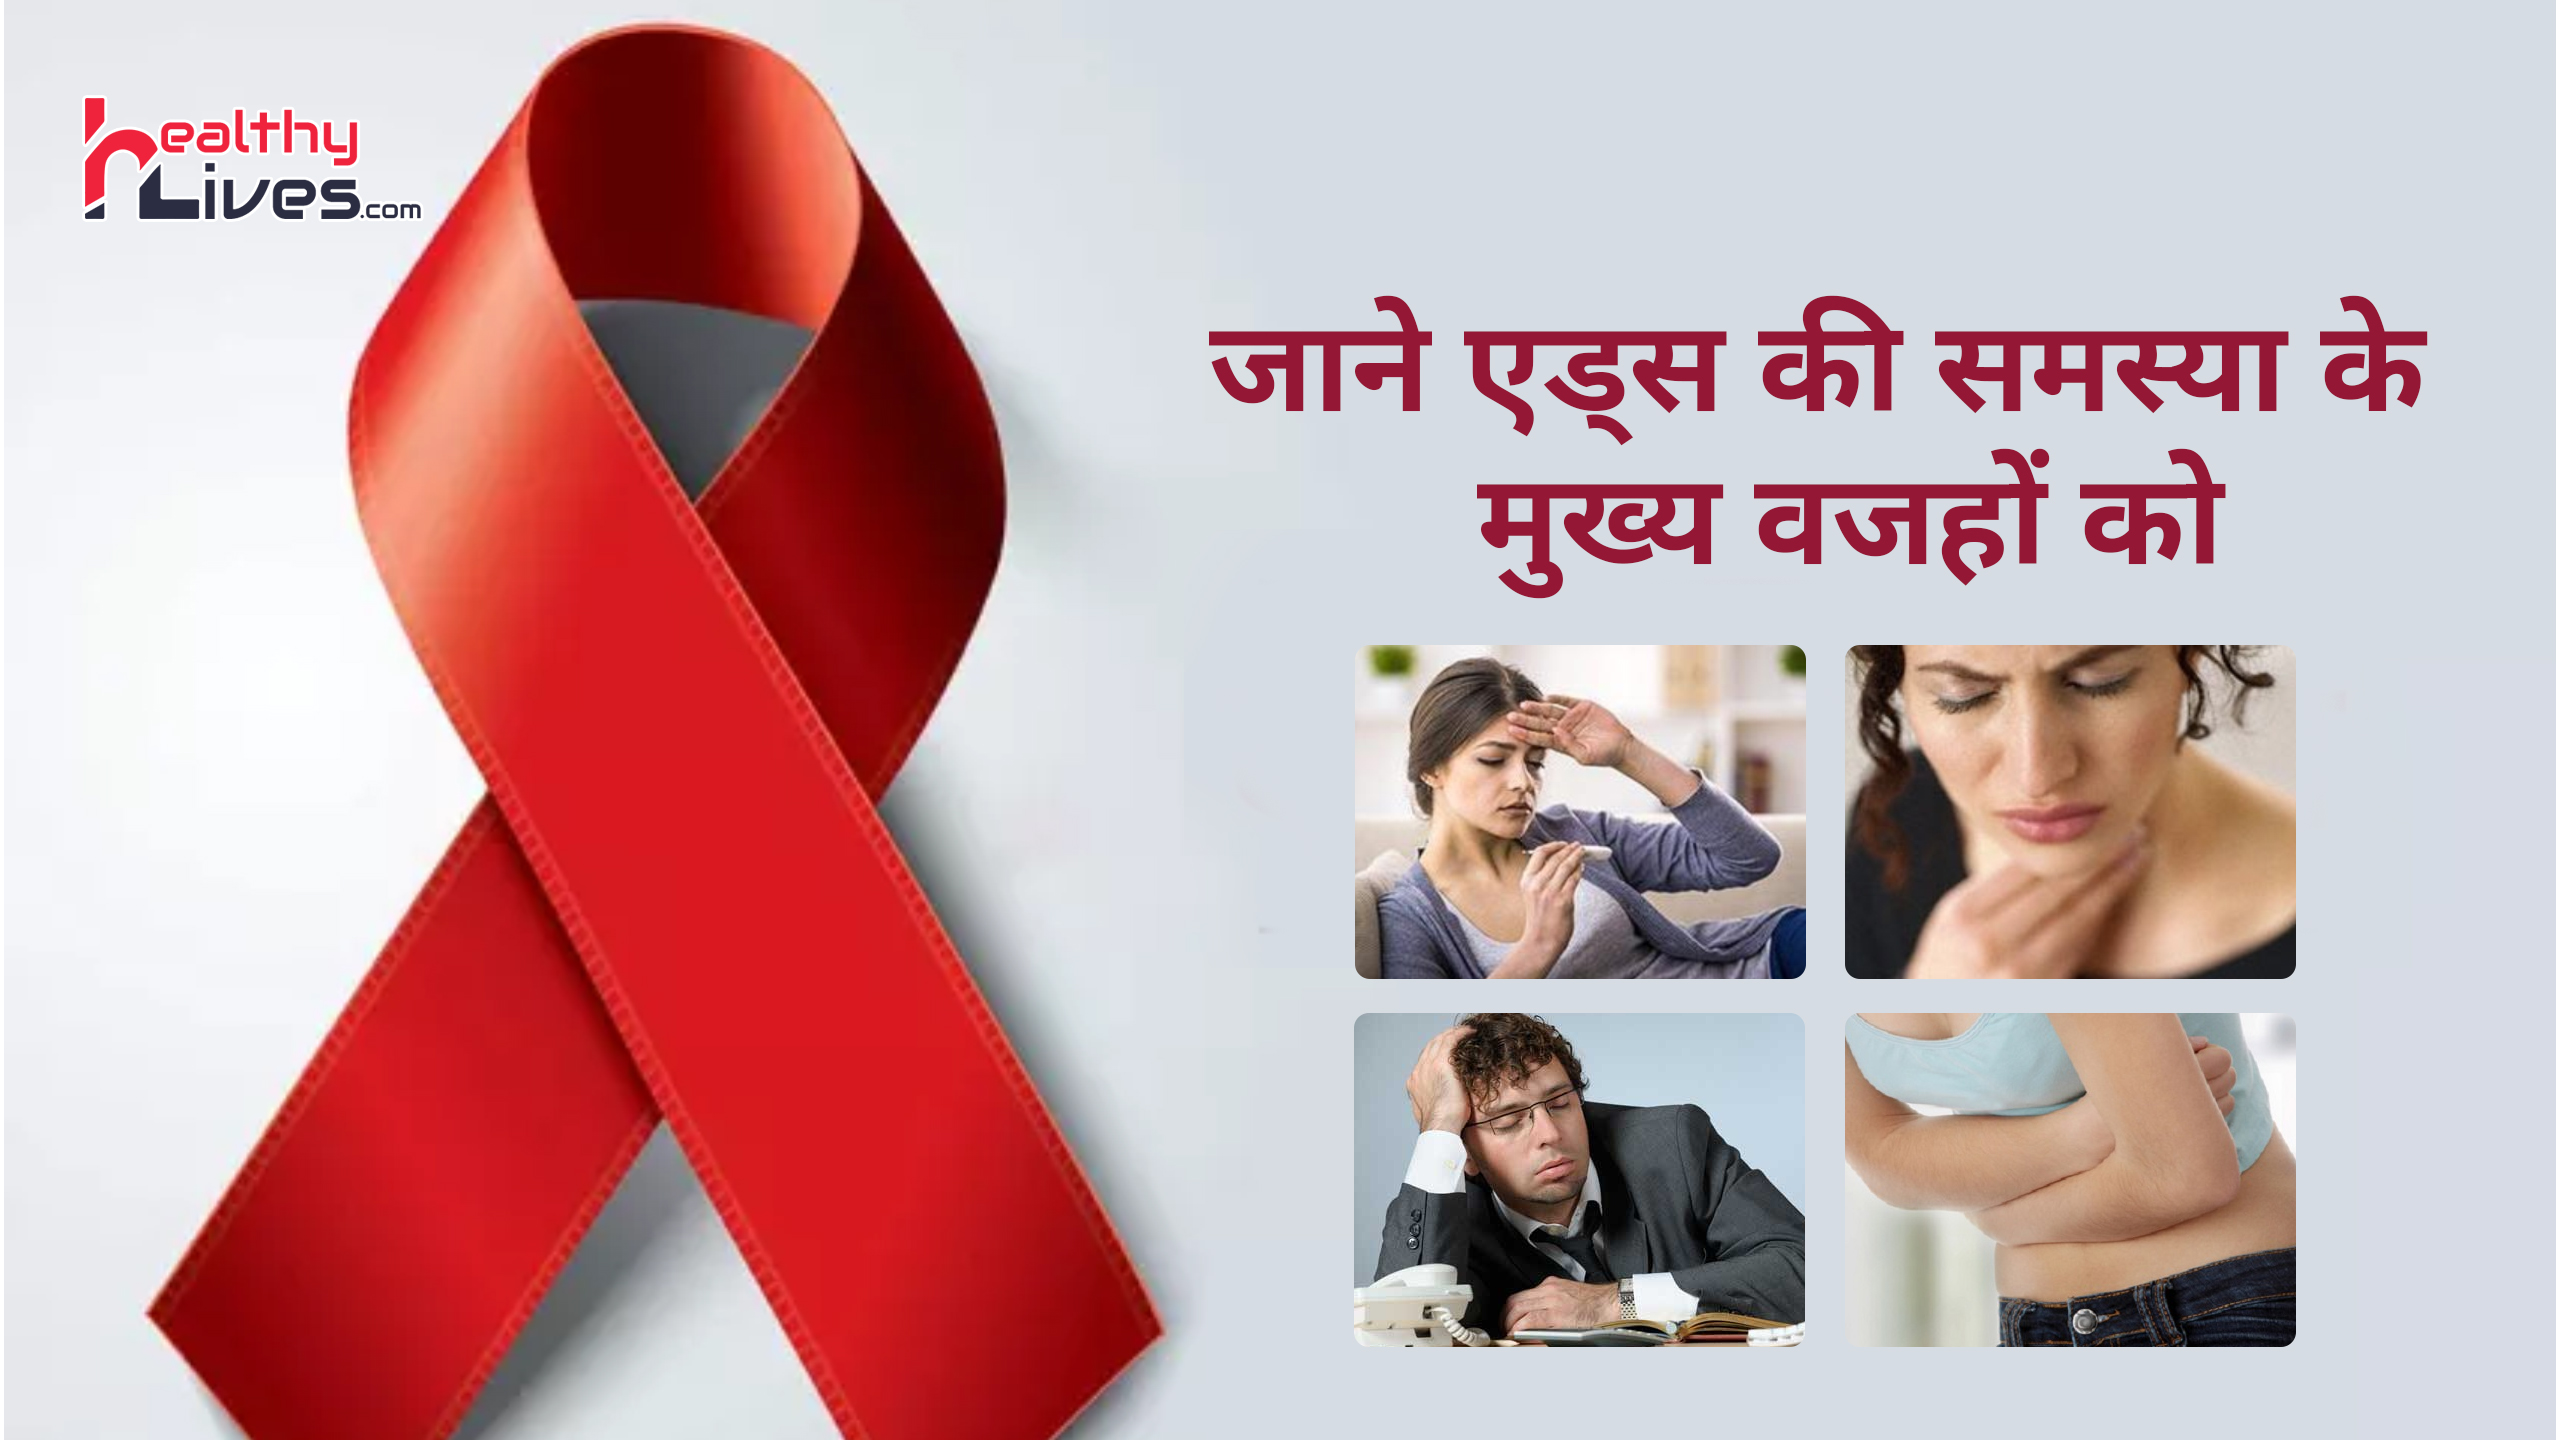 Aids Kaise Hota Hai: जाने एड्स होने की वजहें, इसकी जानकारी से ही हो सकता है इससे बचाव